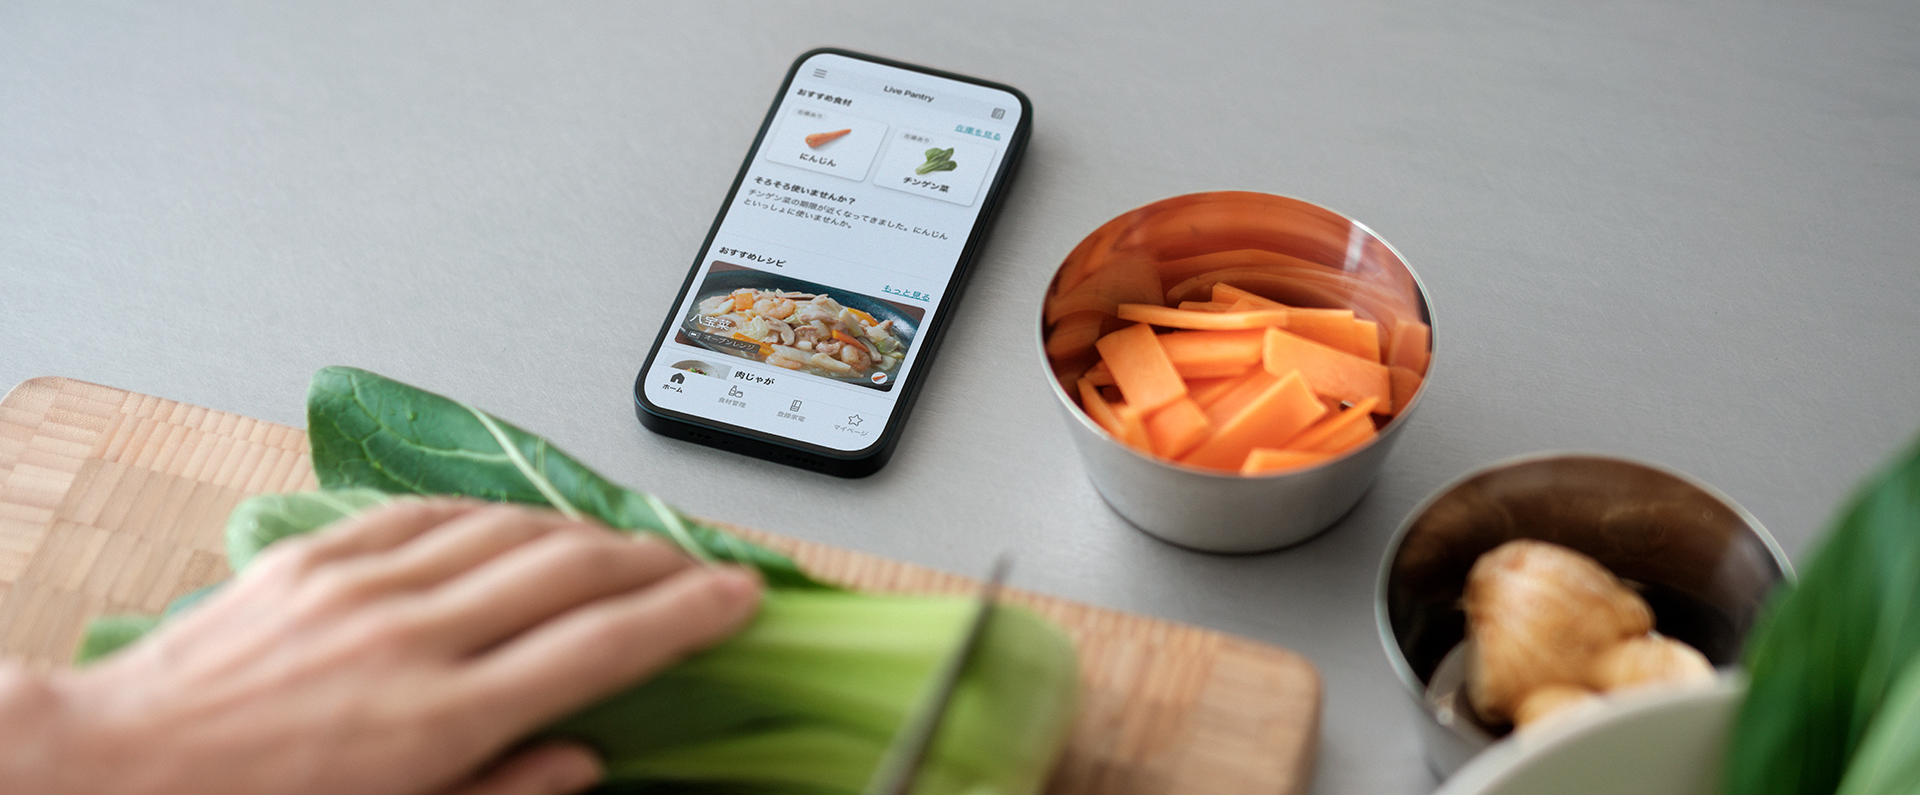 使い切りたい野菜から AIがレシピを提案